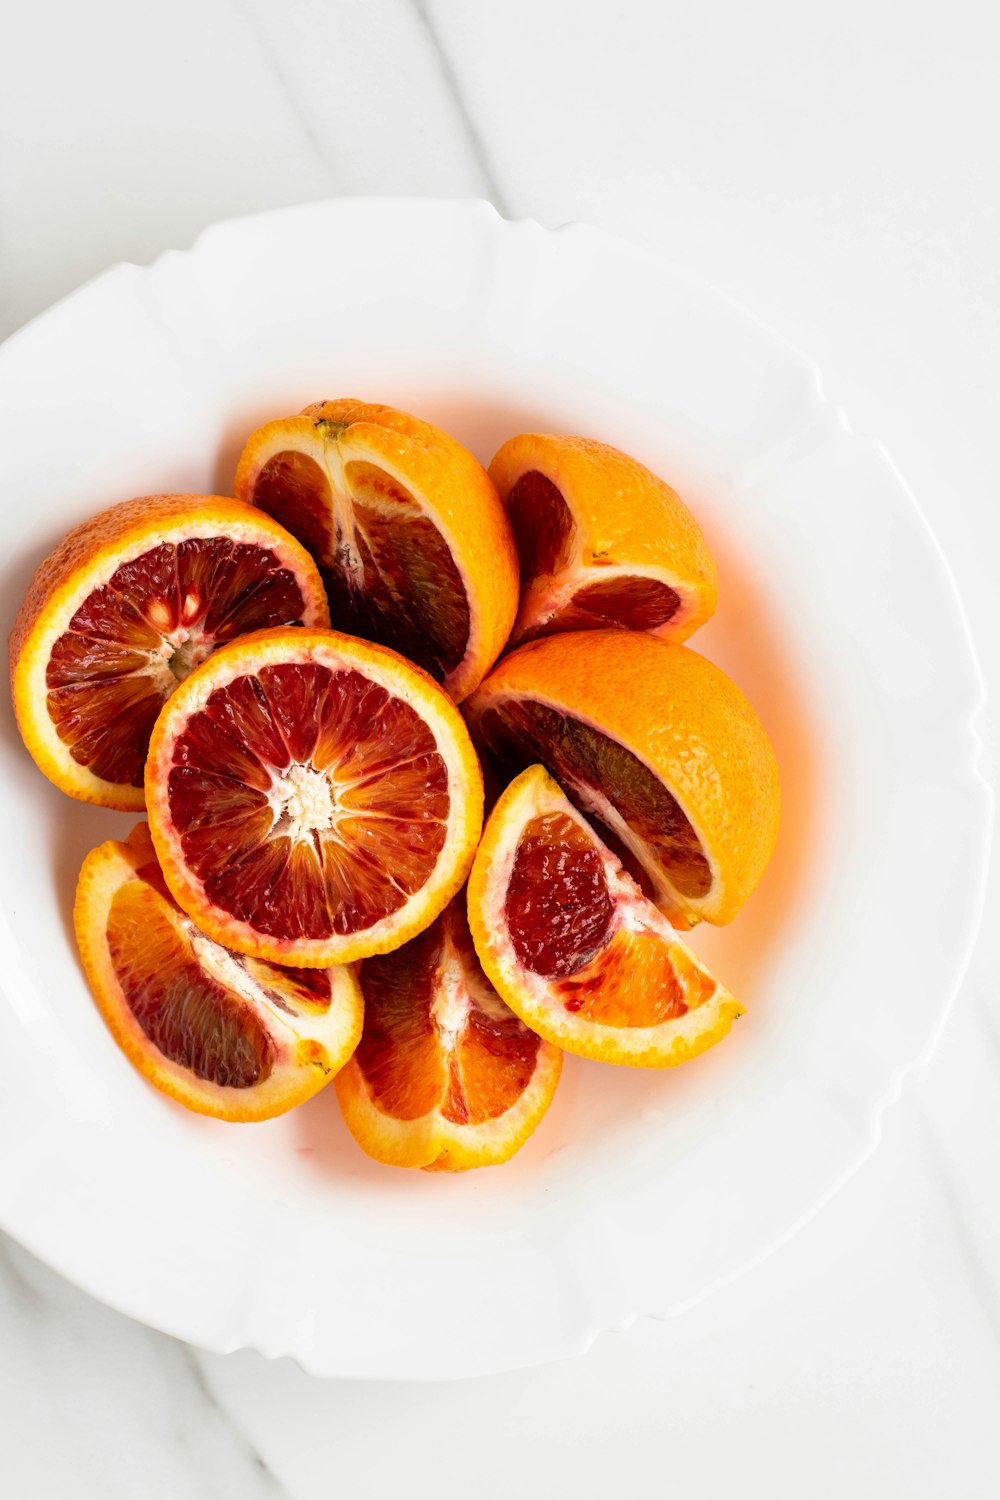 흰색 세라믹 접시에 얇게 썬 오렌지 과일